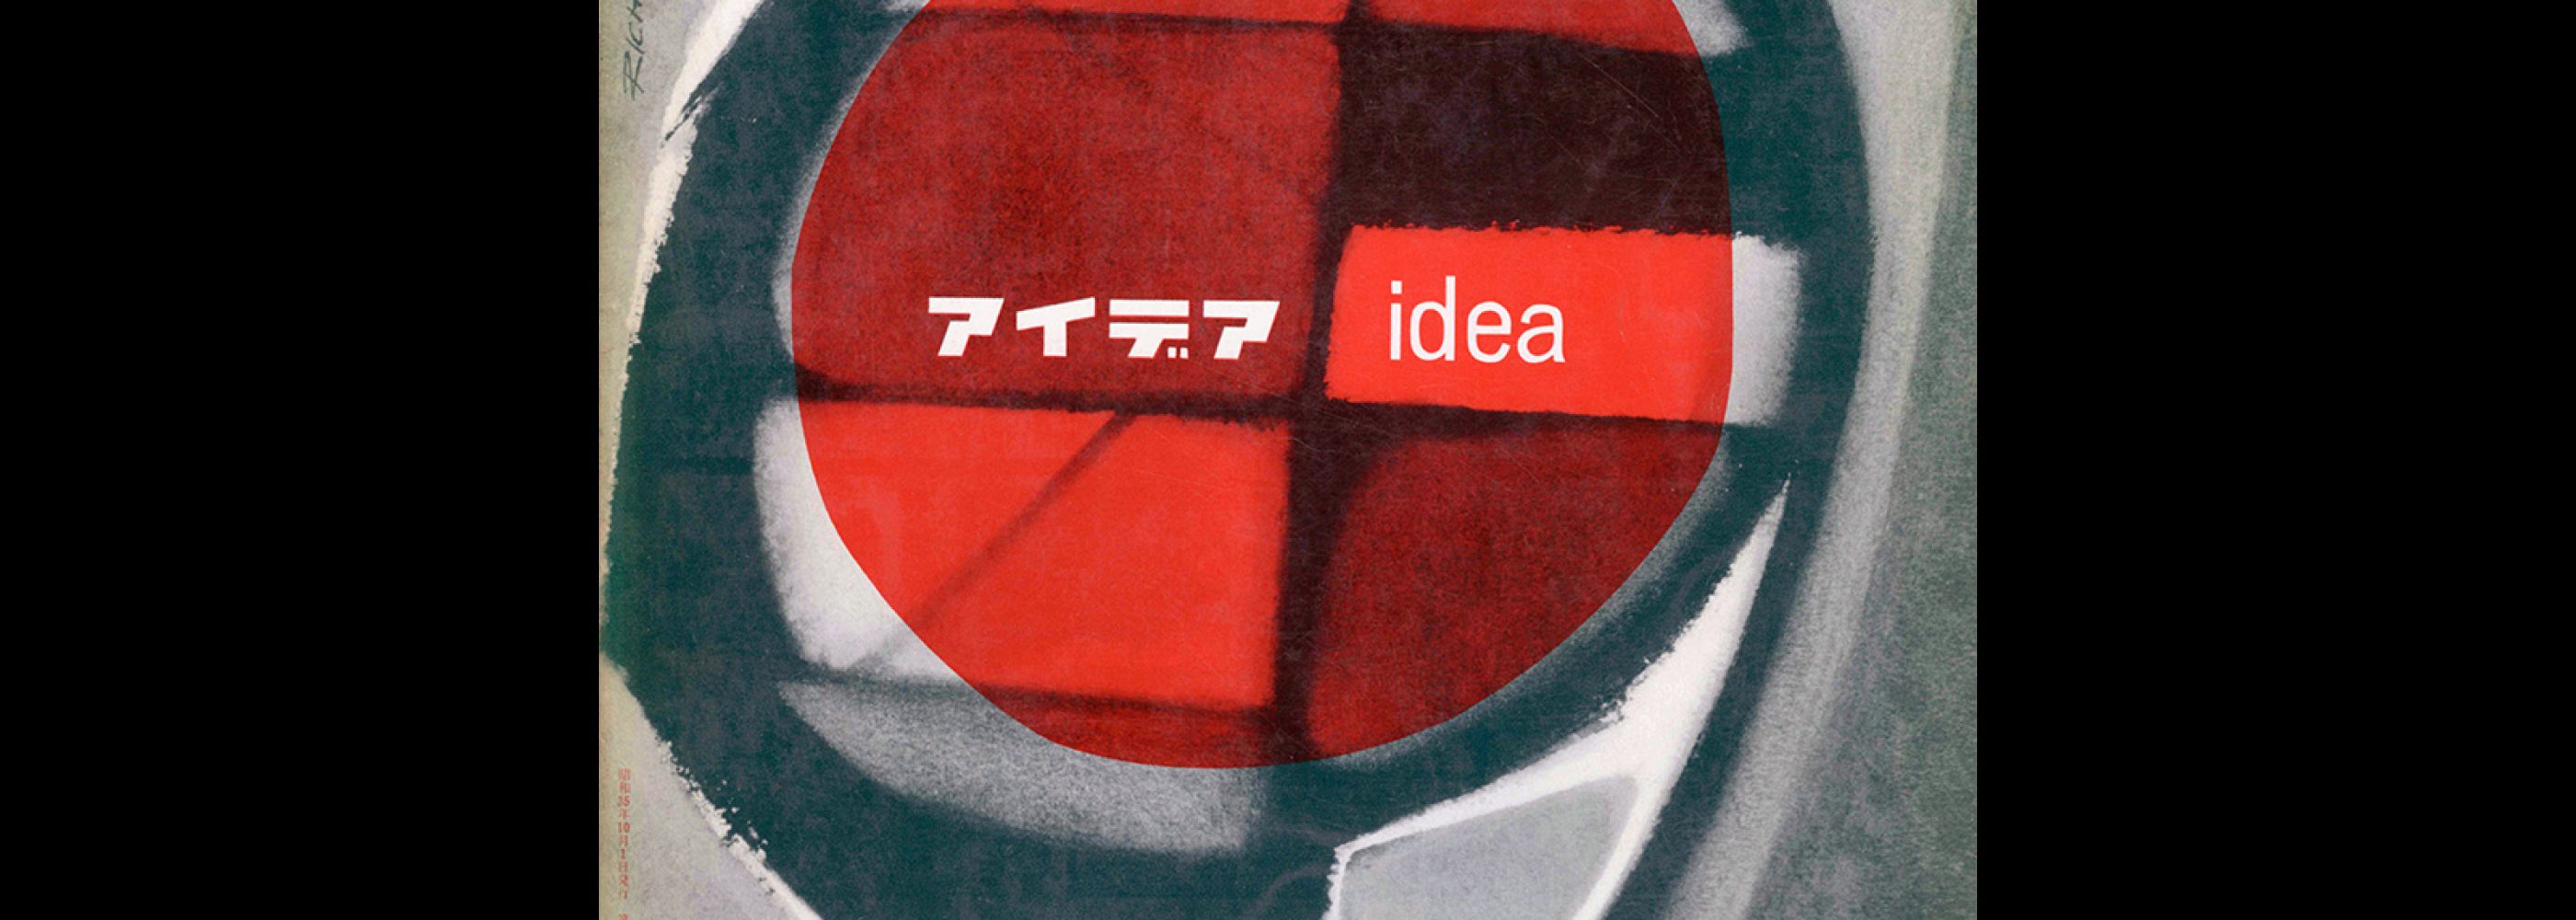 Idea 43, 1960-10. Cover design by Jacques Richez.